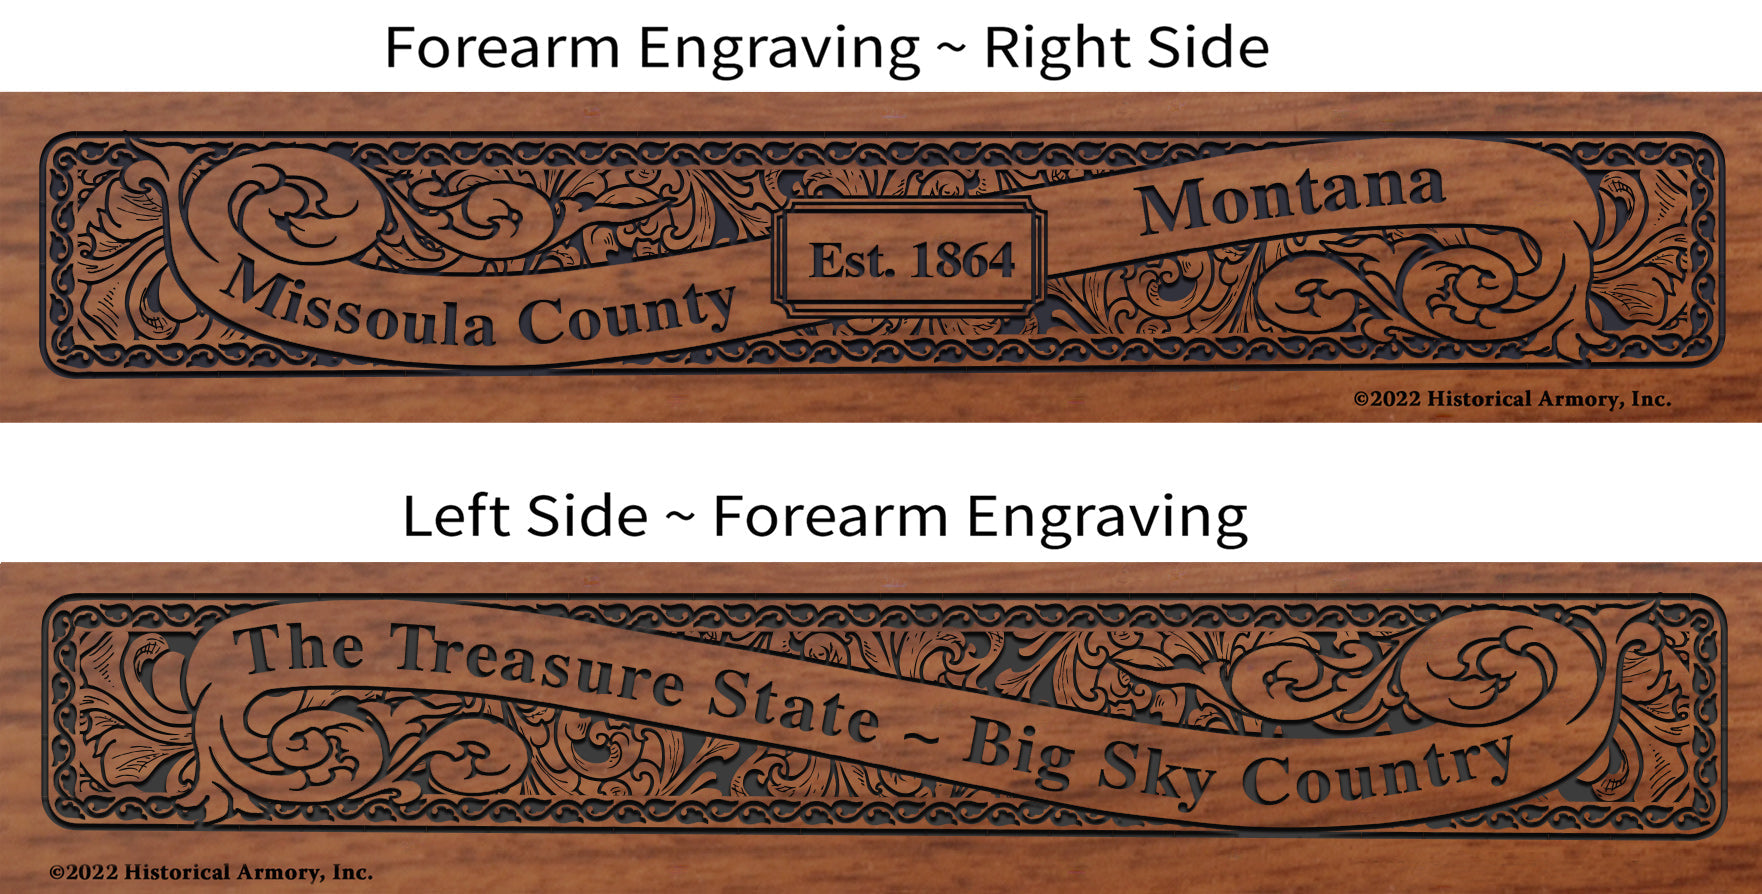 Missoula County Montana Engraved Rifle Forearm